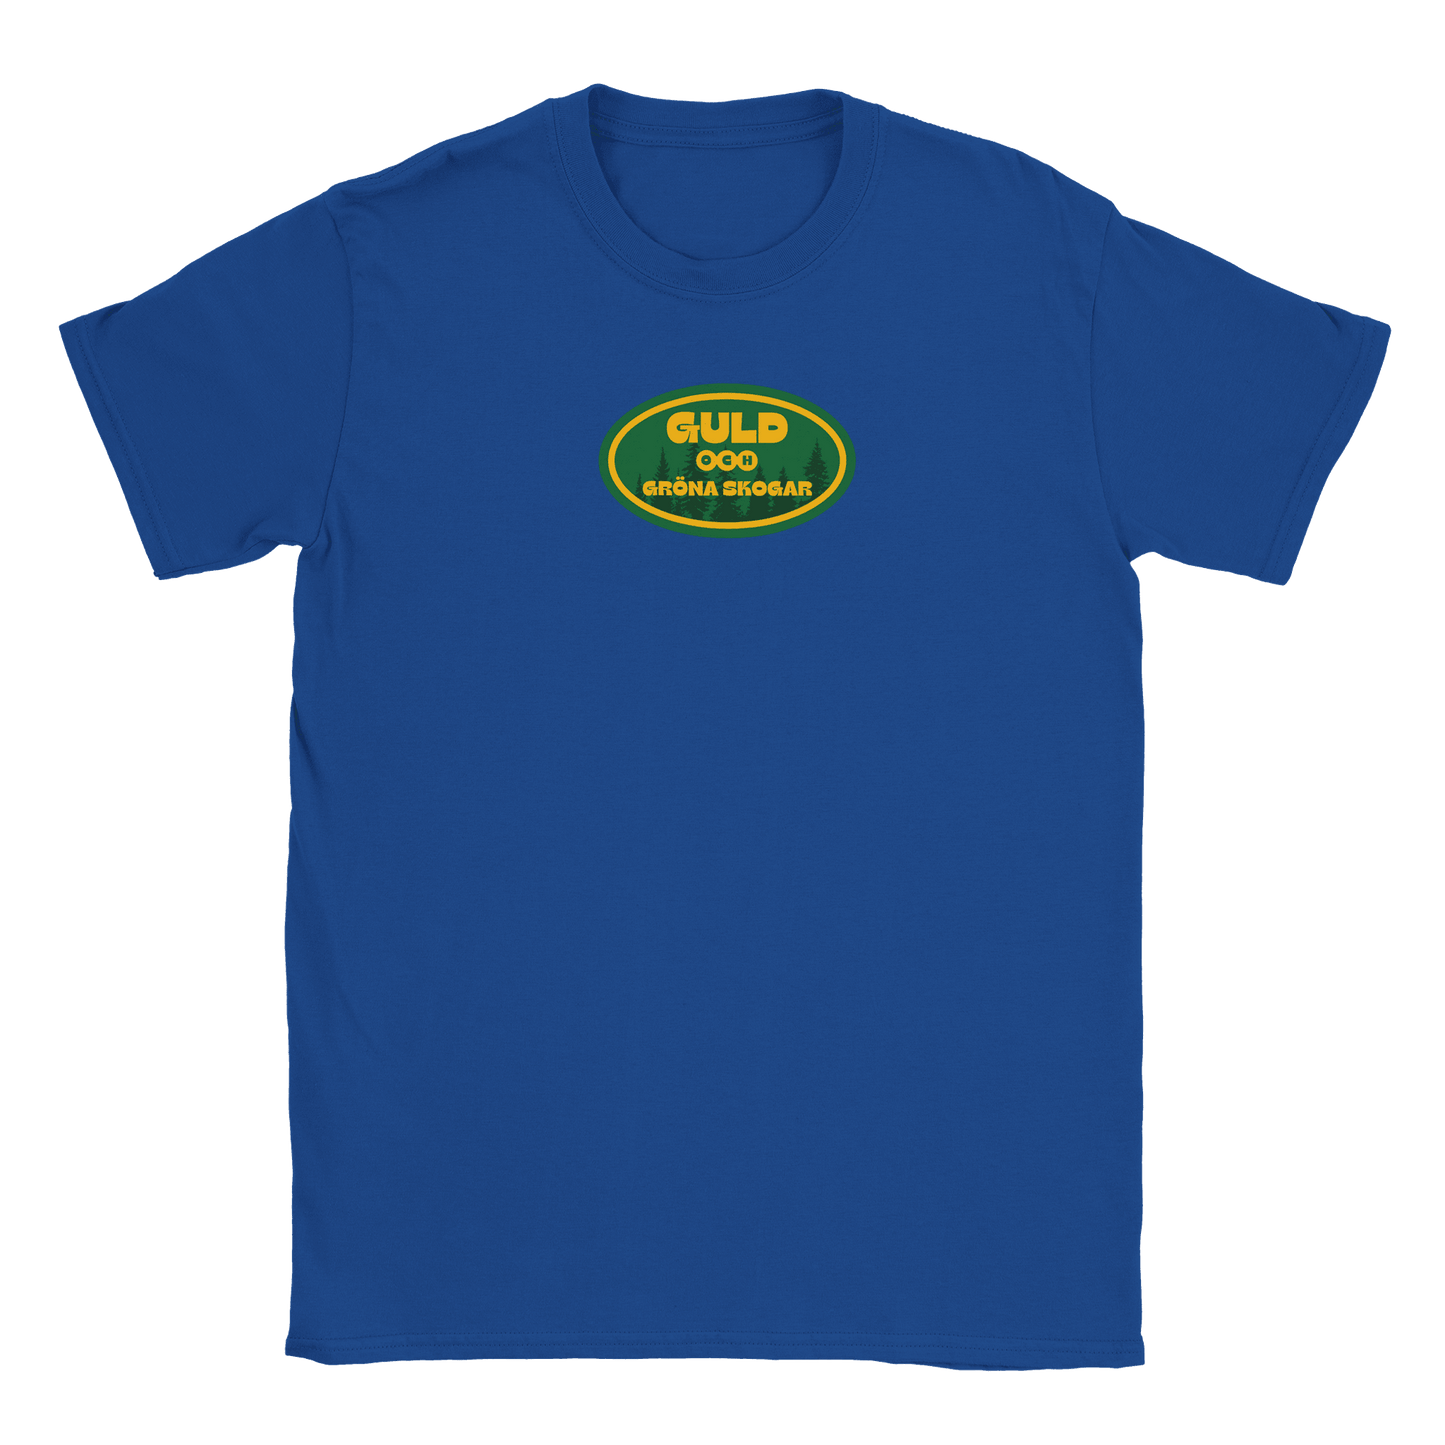 Guld och gröna skogar - T-shirt Blå